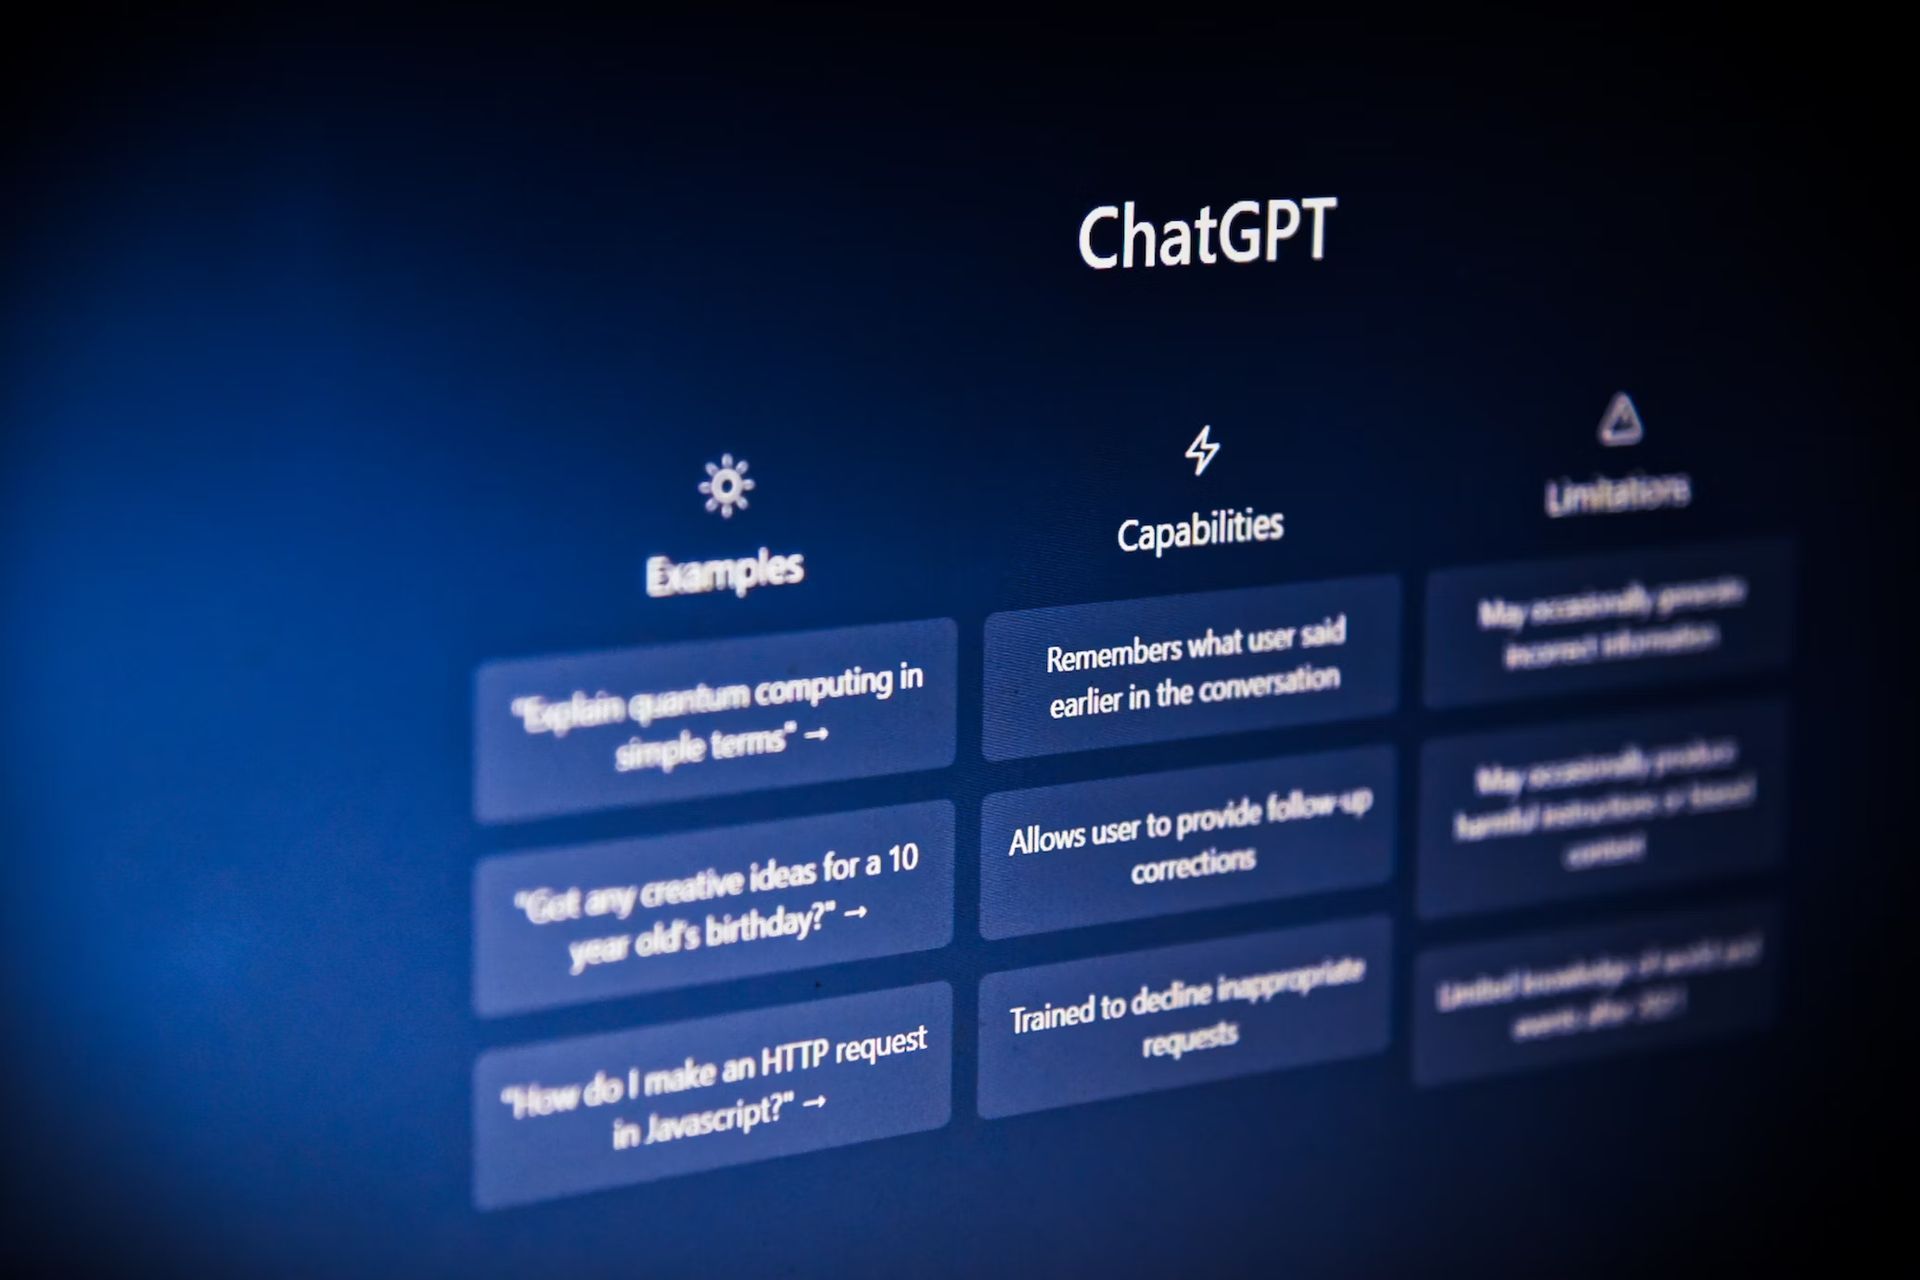 あなたのアカウントは不正使用の可能性があると報告されました: ChatGPT エラーを修正するには?